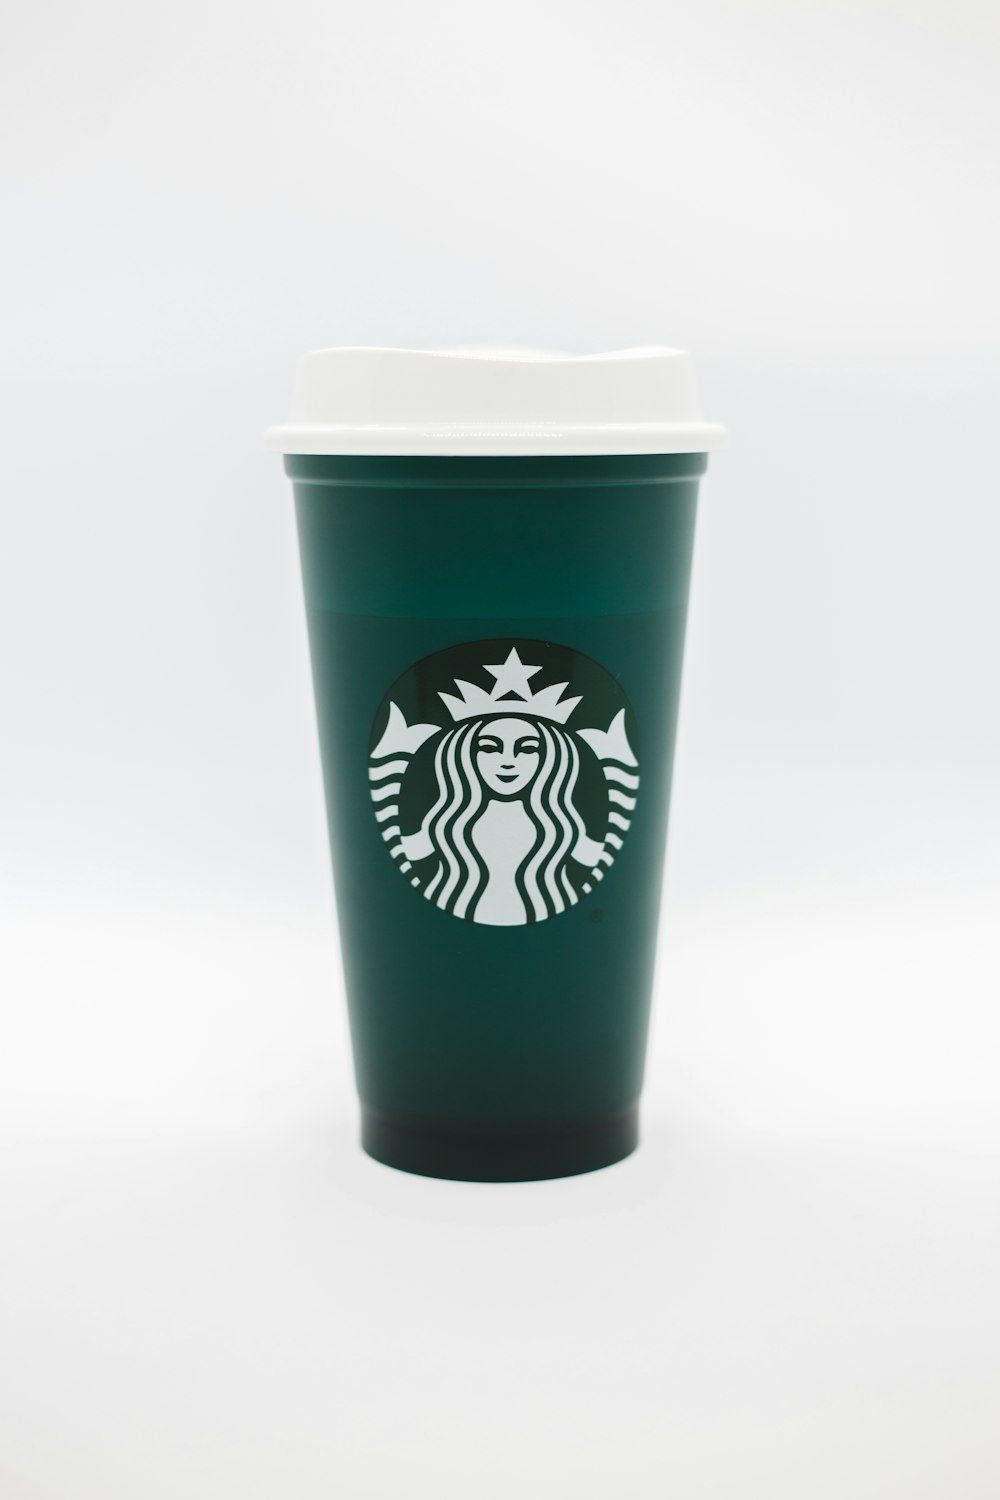 Imágenes de Taza De Starbucks  Descarga imágenes gratuitas en Unsplash